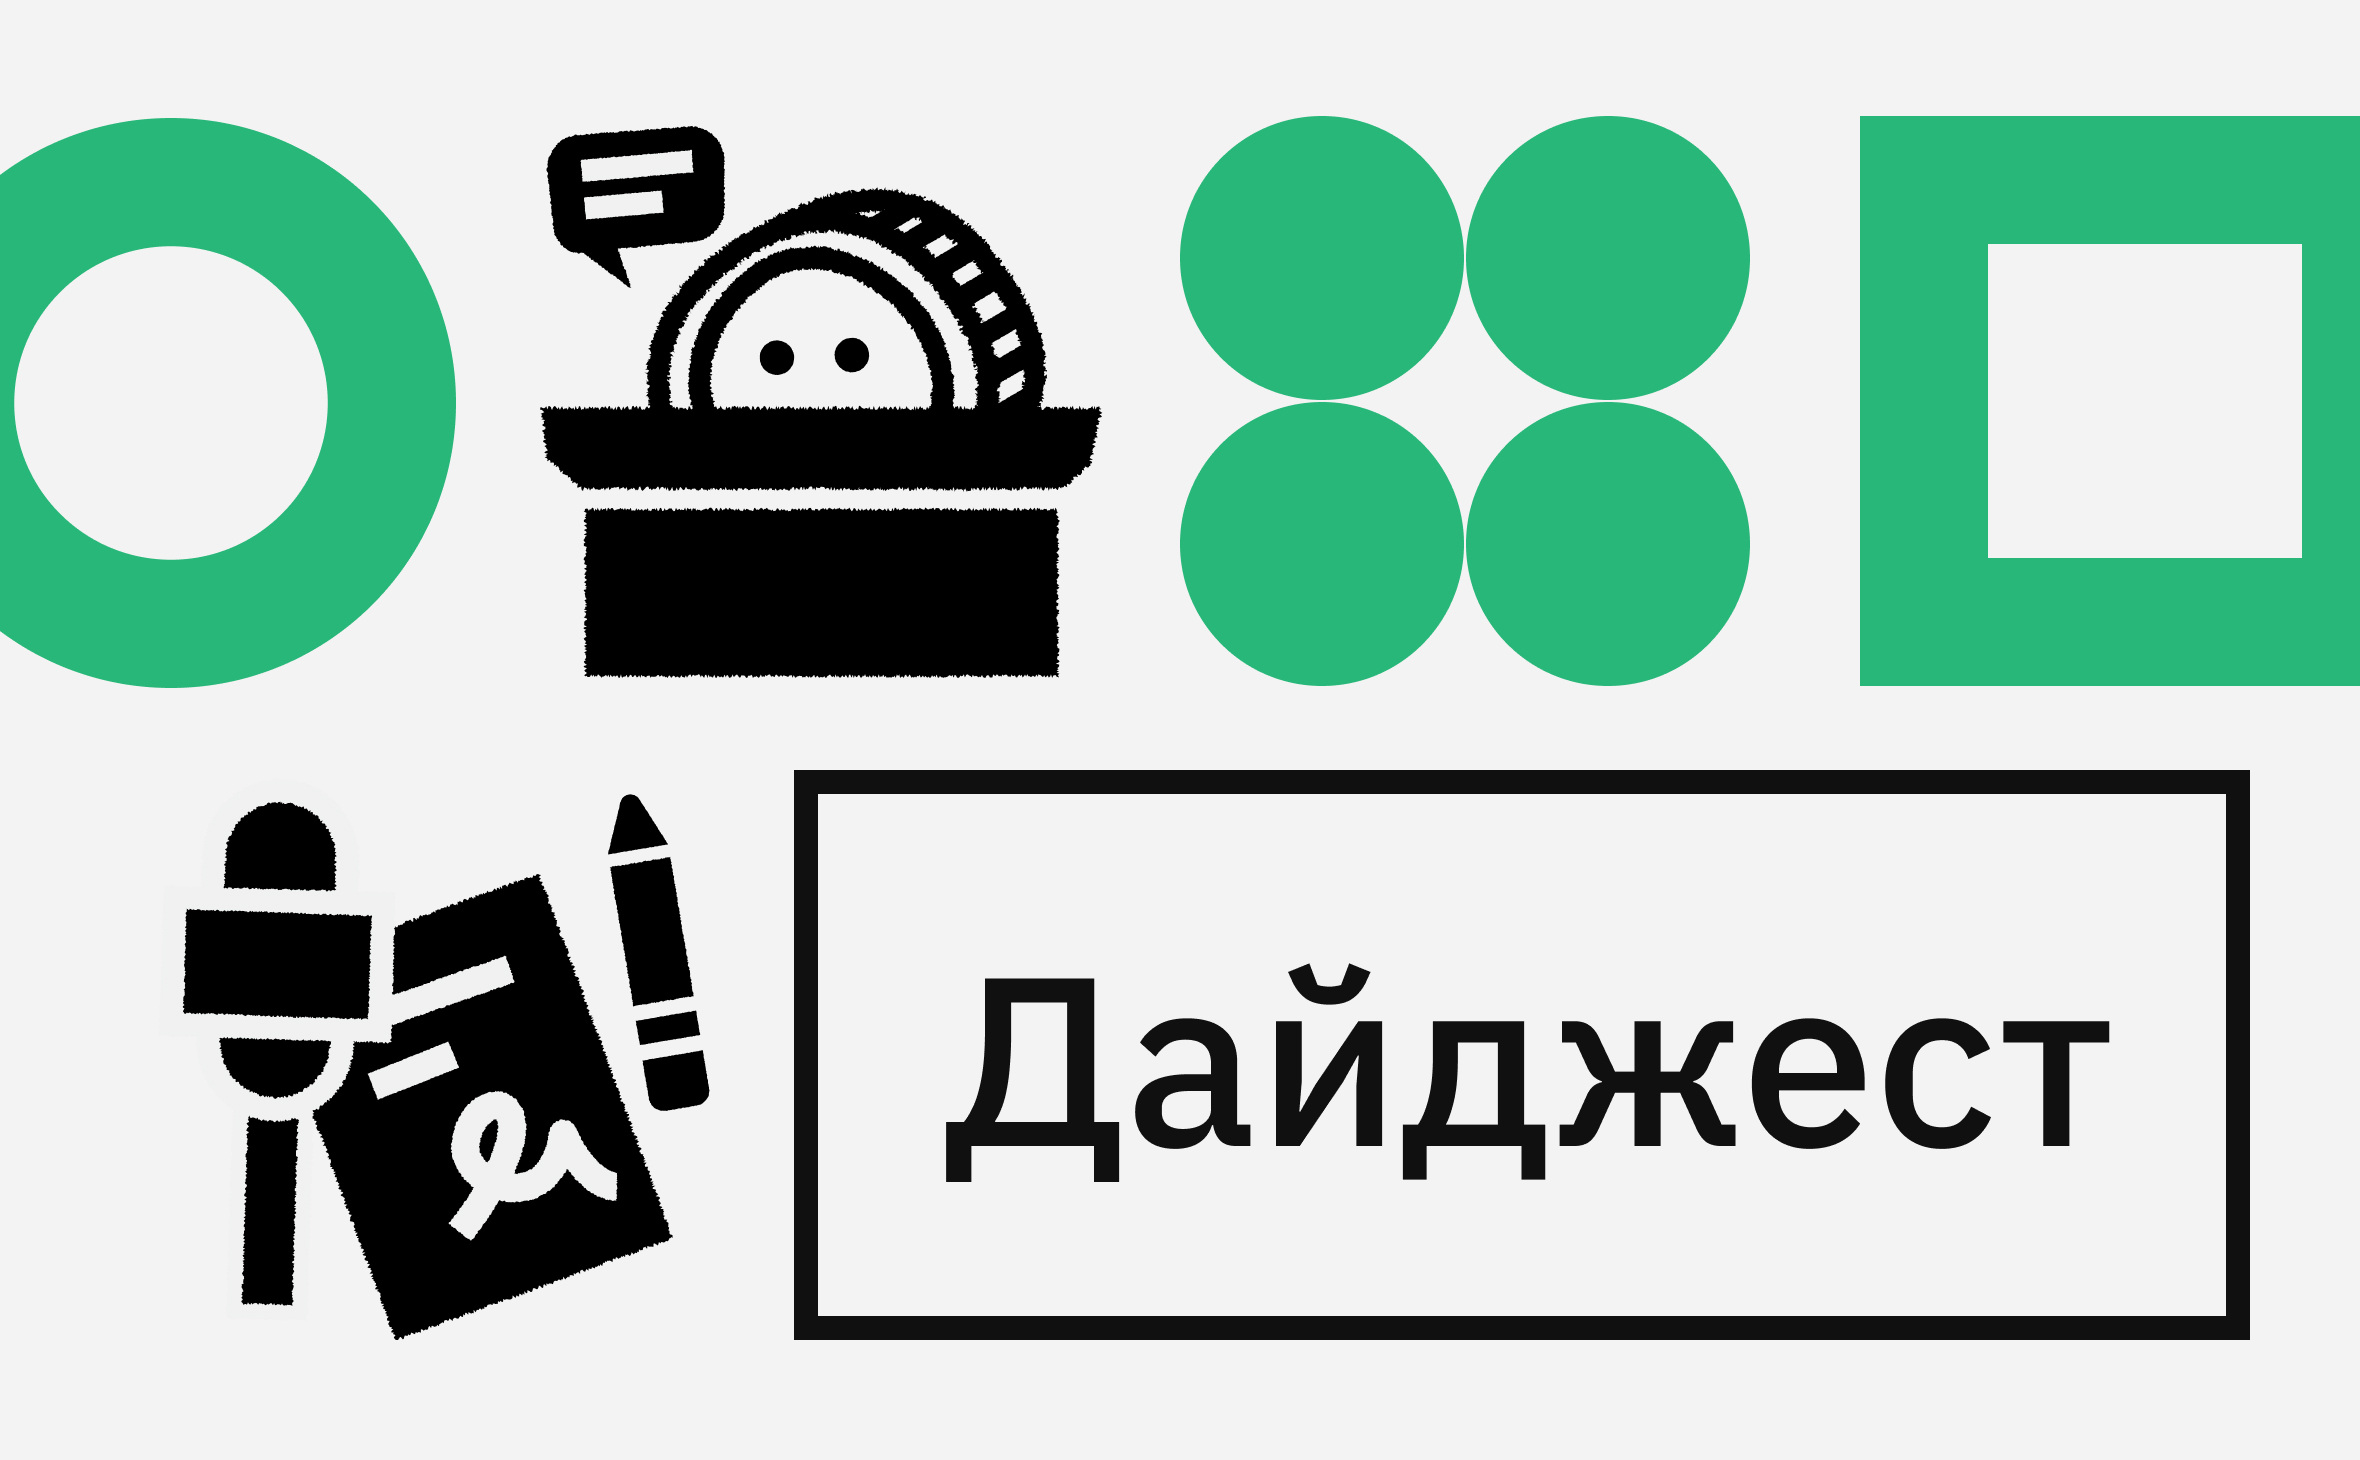 Курс криптовалюты XRP - как мониторить цену XRP к доллару и рублю онлайн